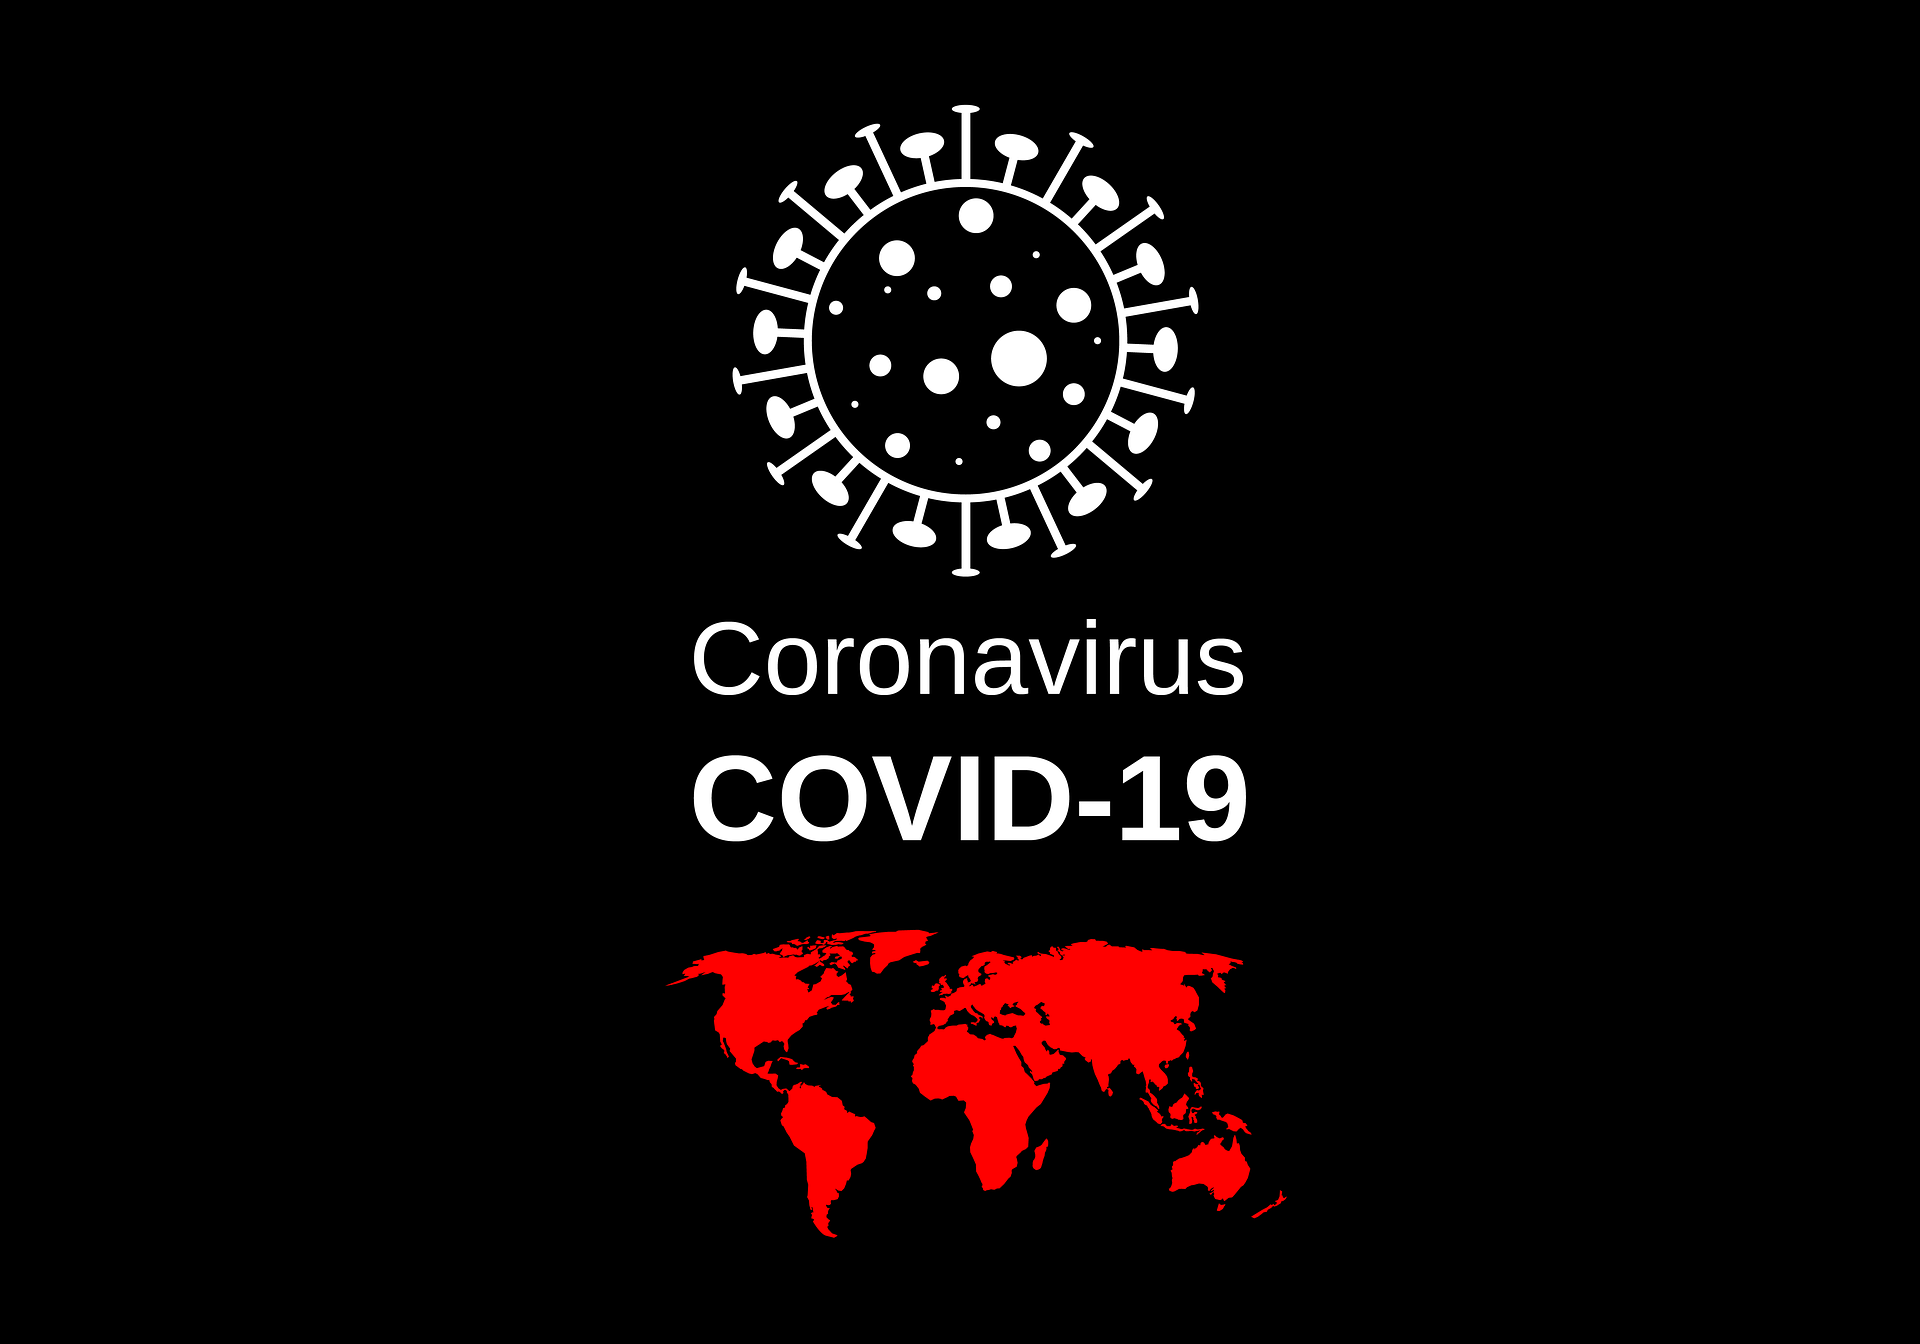 Multiple Online Poker Operators Are Funding the Fight Against Coronavirus